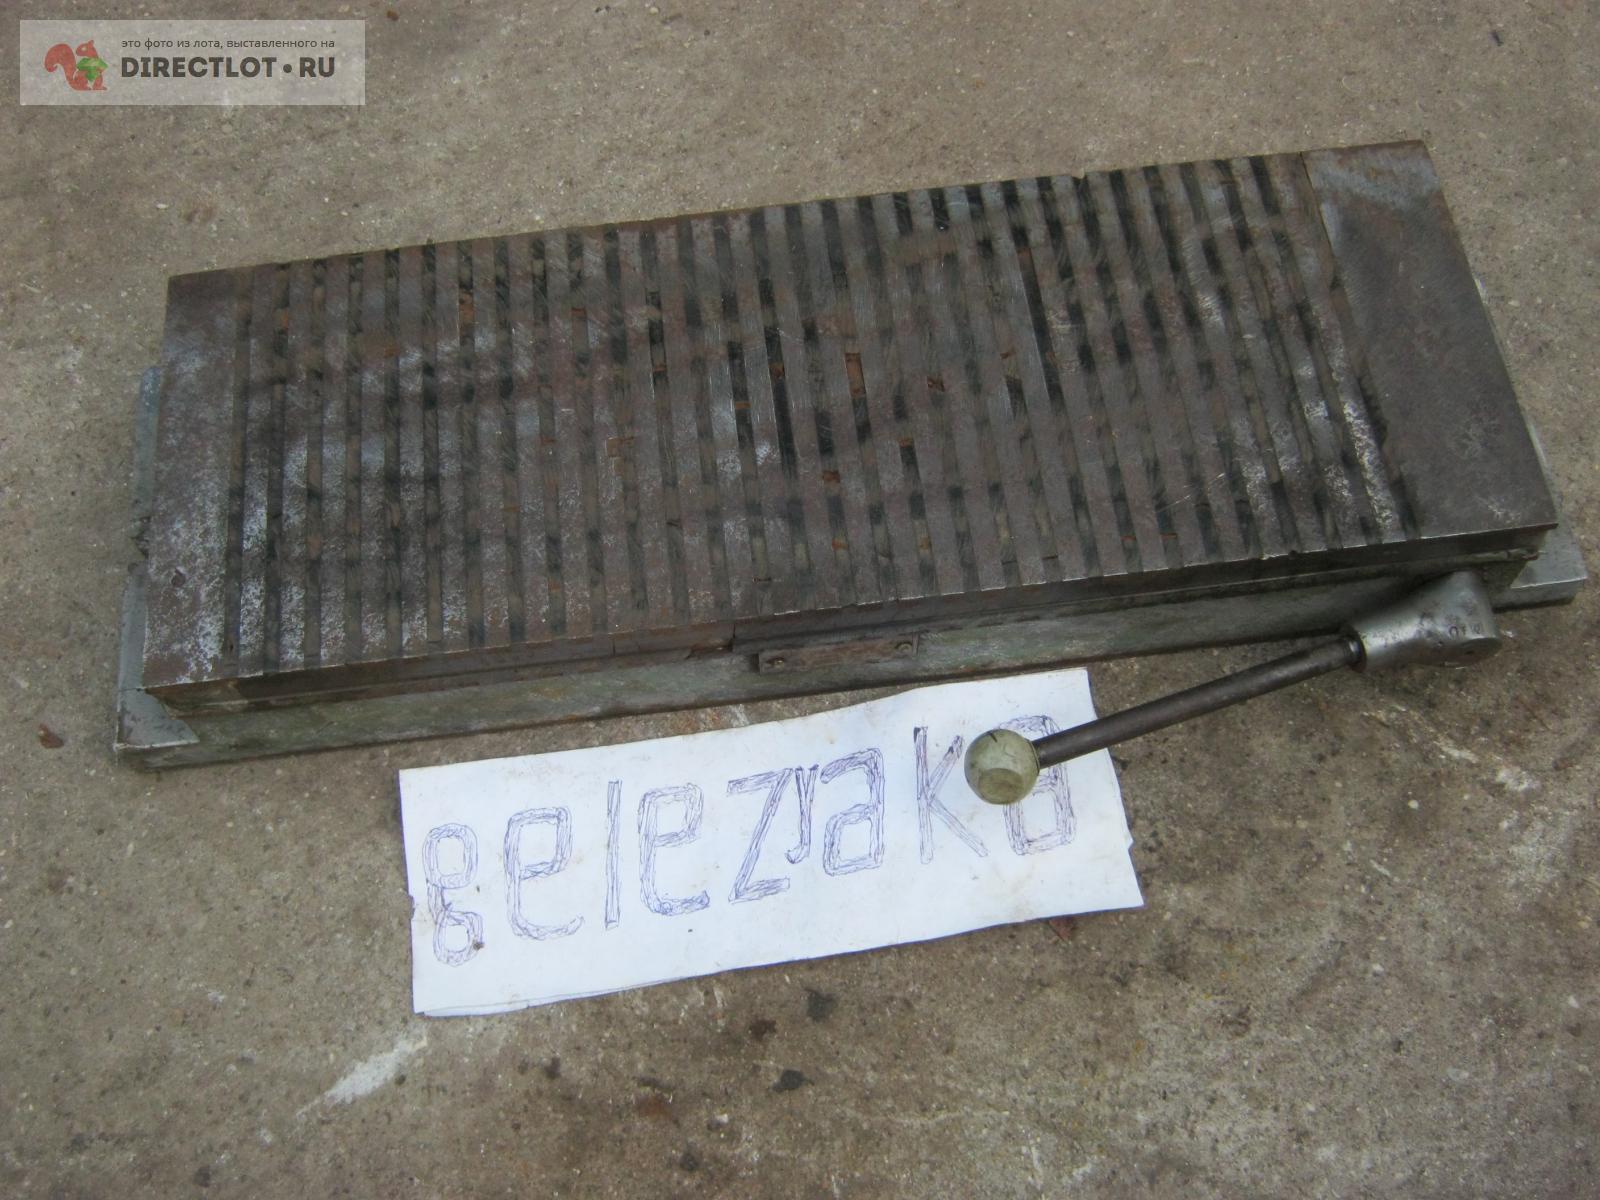  плита 200-560 мм.  в Симферополе цена 8000 Р на .